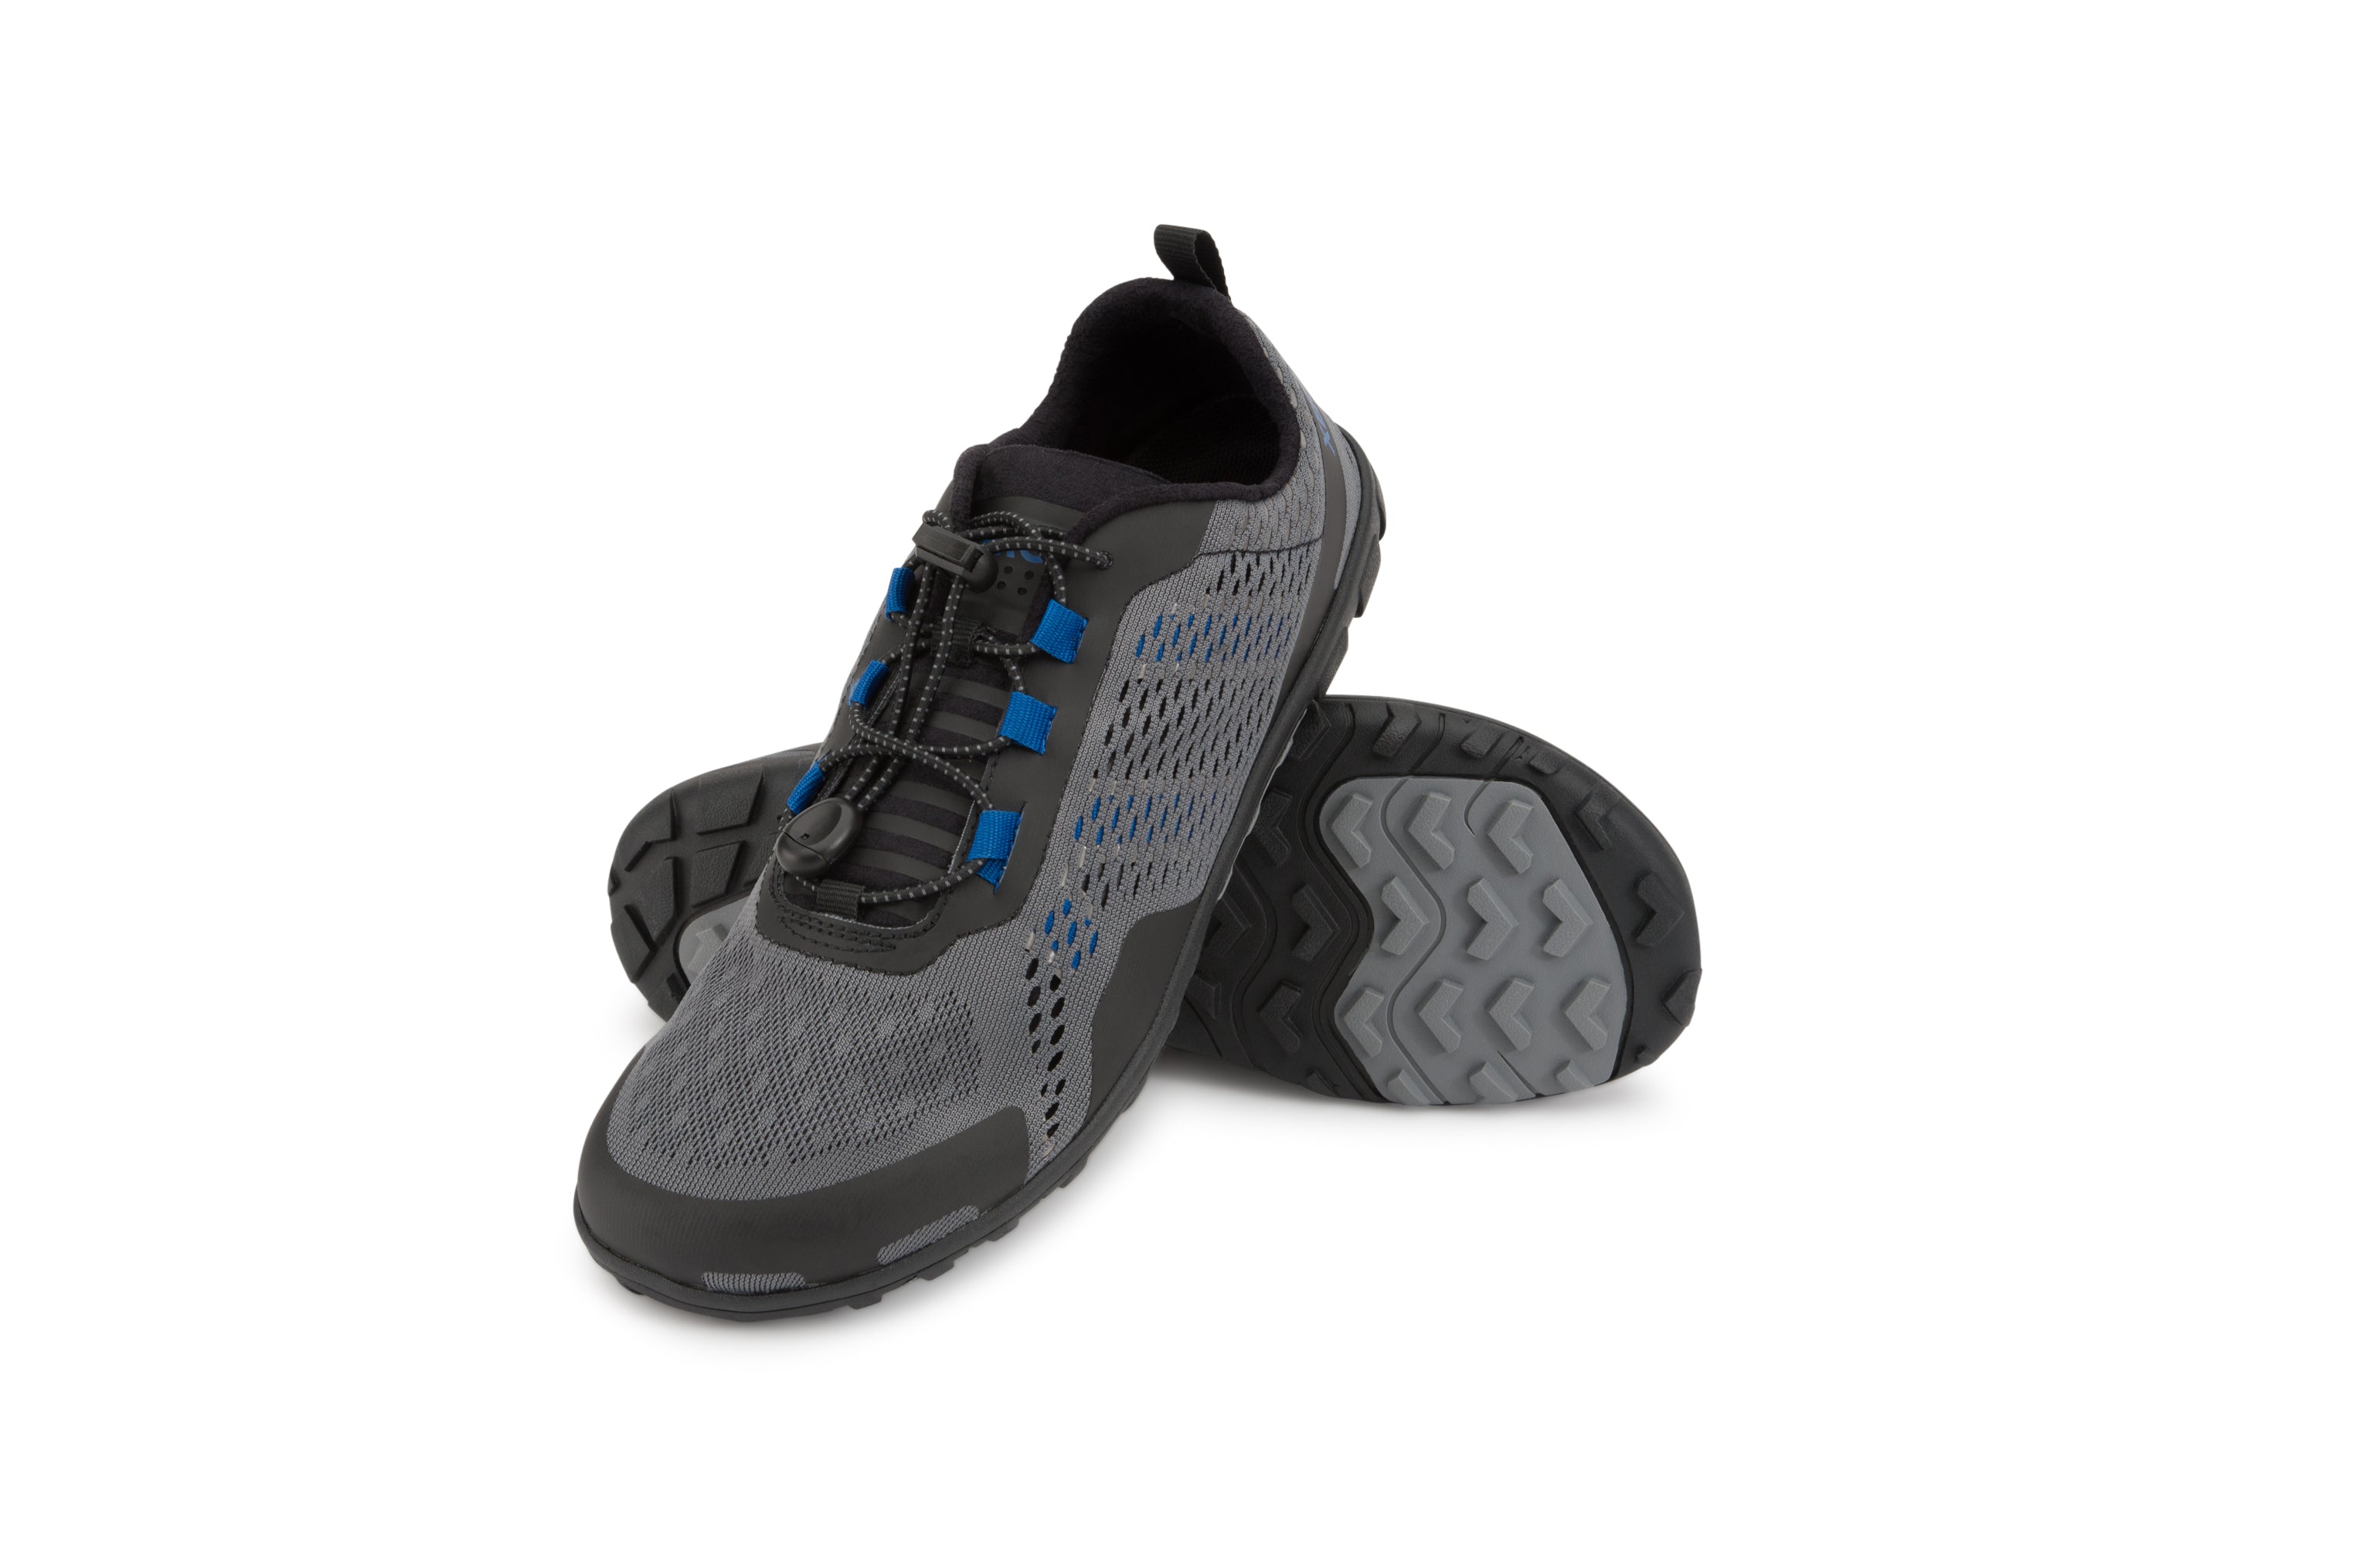 Xero Shoes Aqua X Sport barfods vand træningssko til mænd i farven steel gray / blue, par